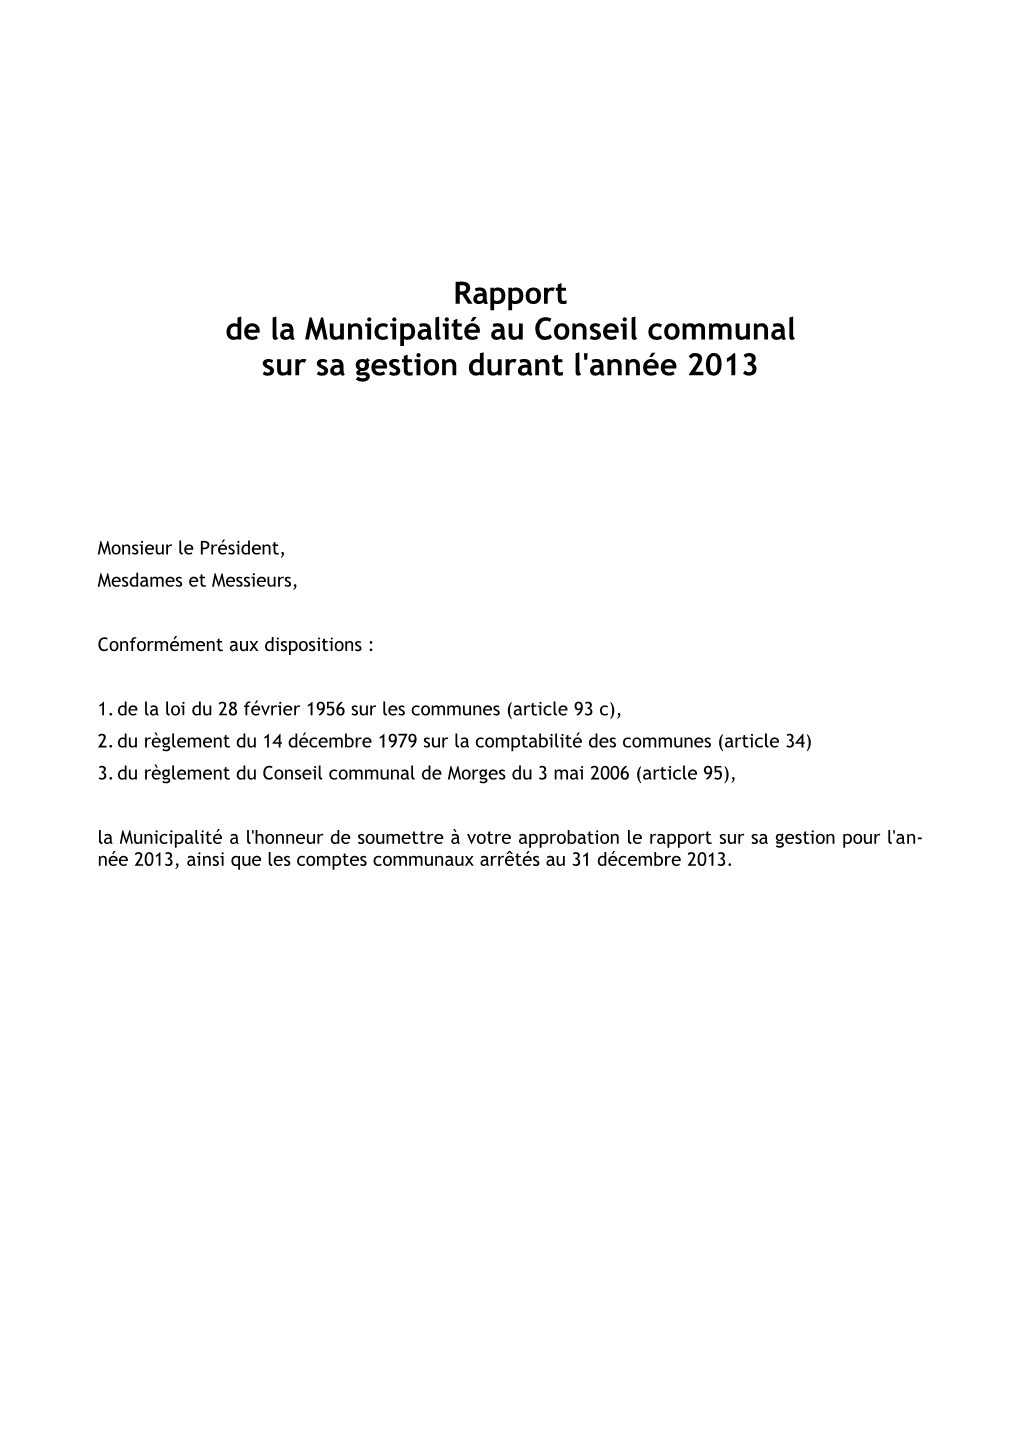 Rapport De Gestion 2013 De La Municipalité